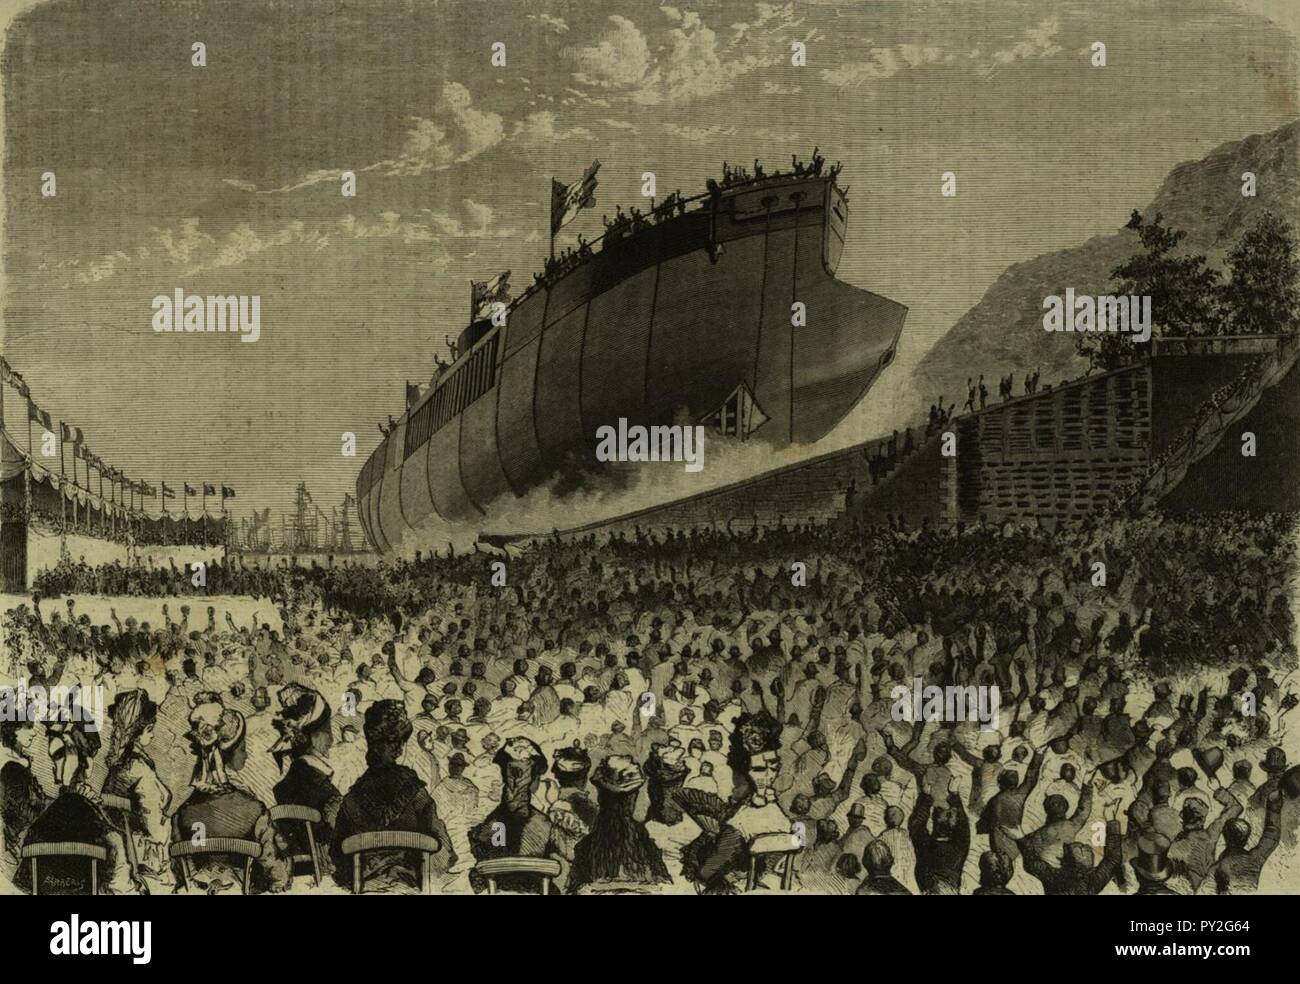 Caio Duilio (ship, 1880) - Launch - L'Illustrazione Italiana. Stock Photo